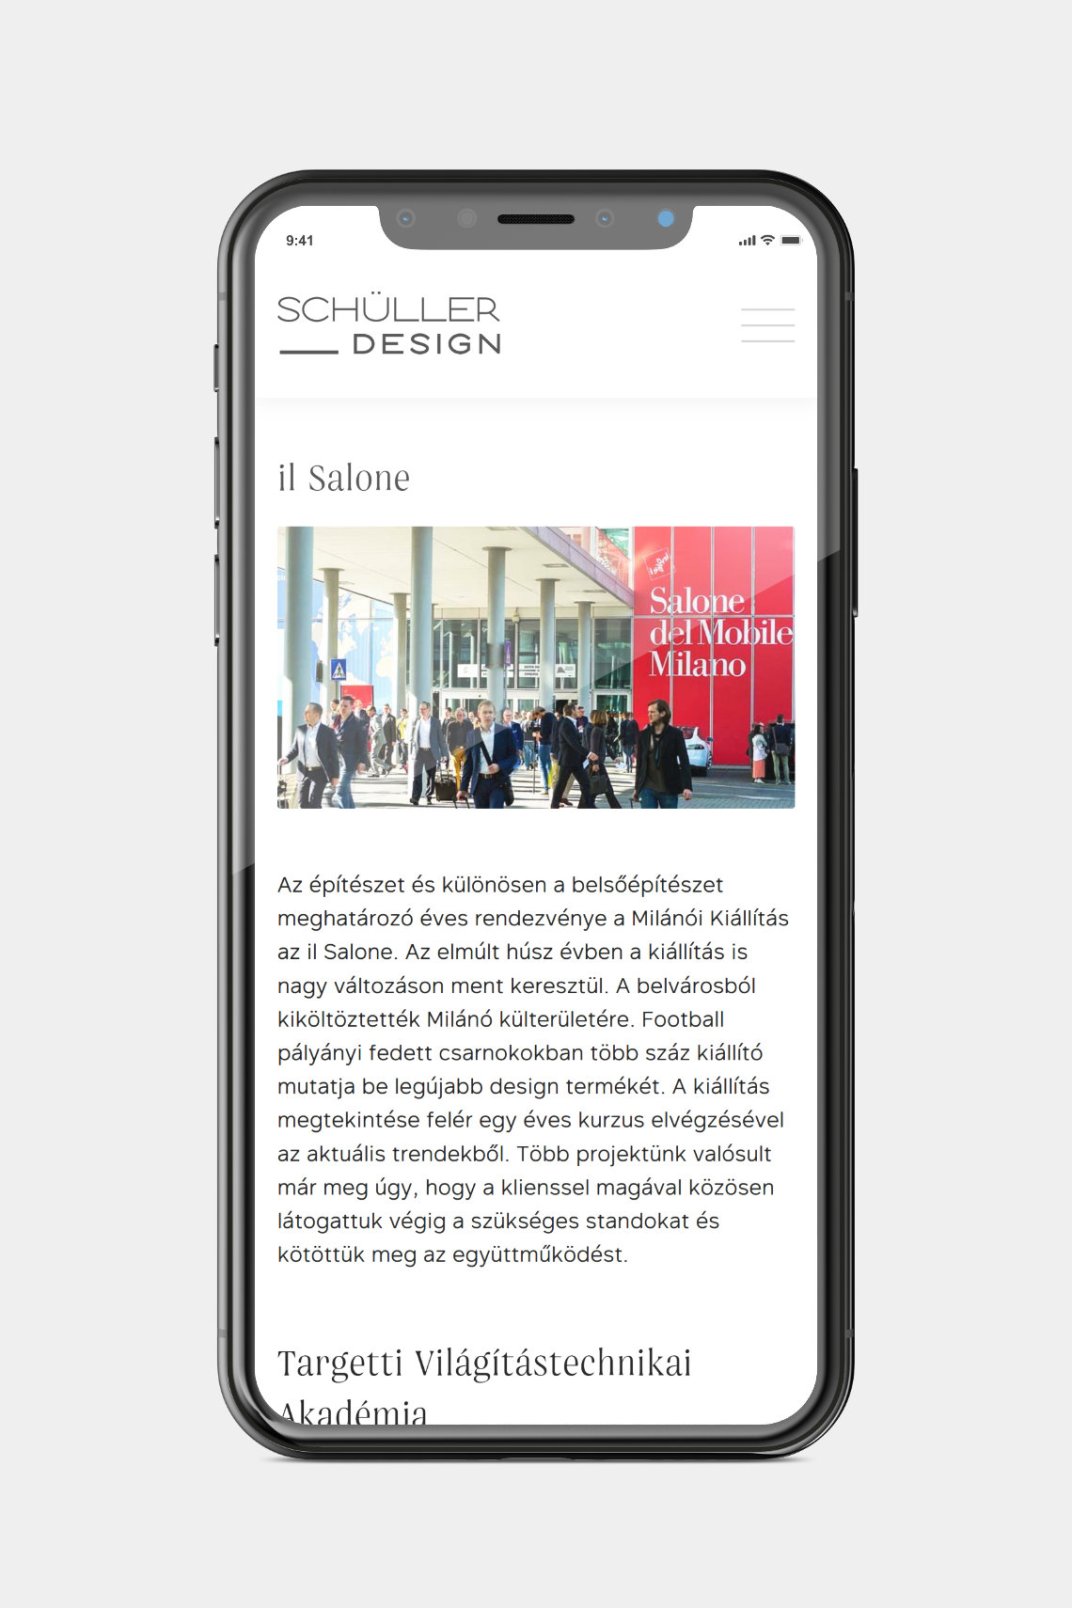 Web design and web development for SCHÜLLER ÉS TÁRSAI design studio about page on phone